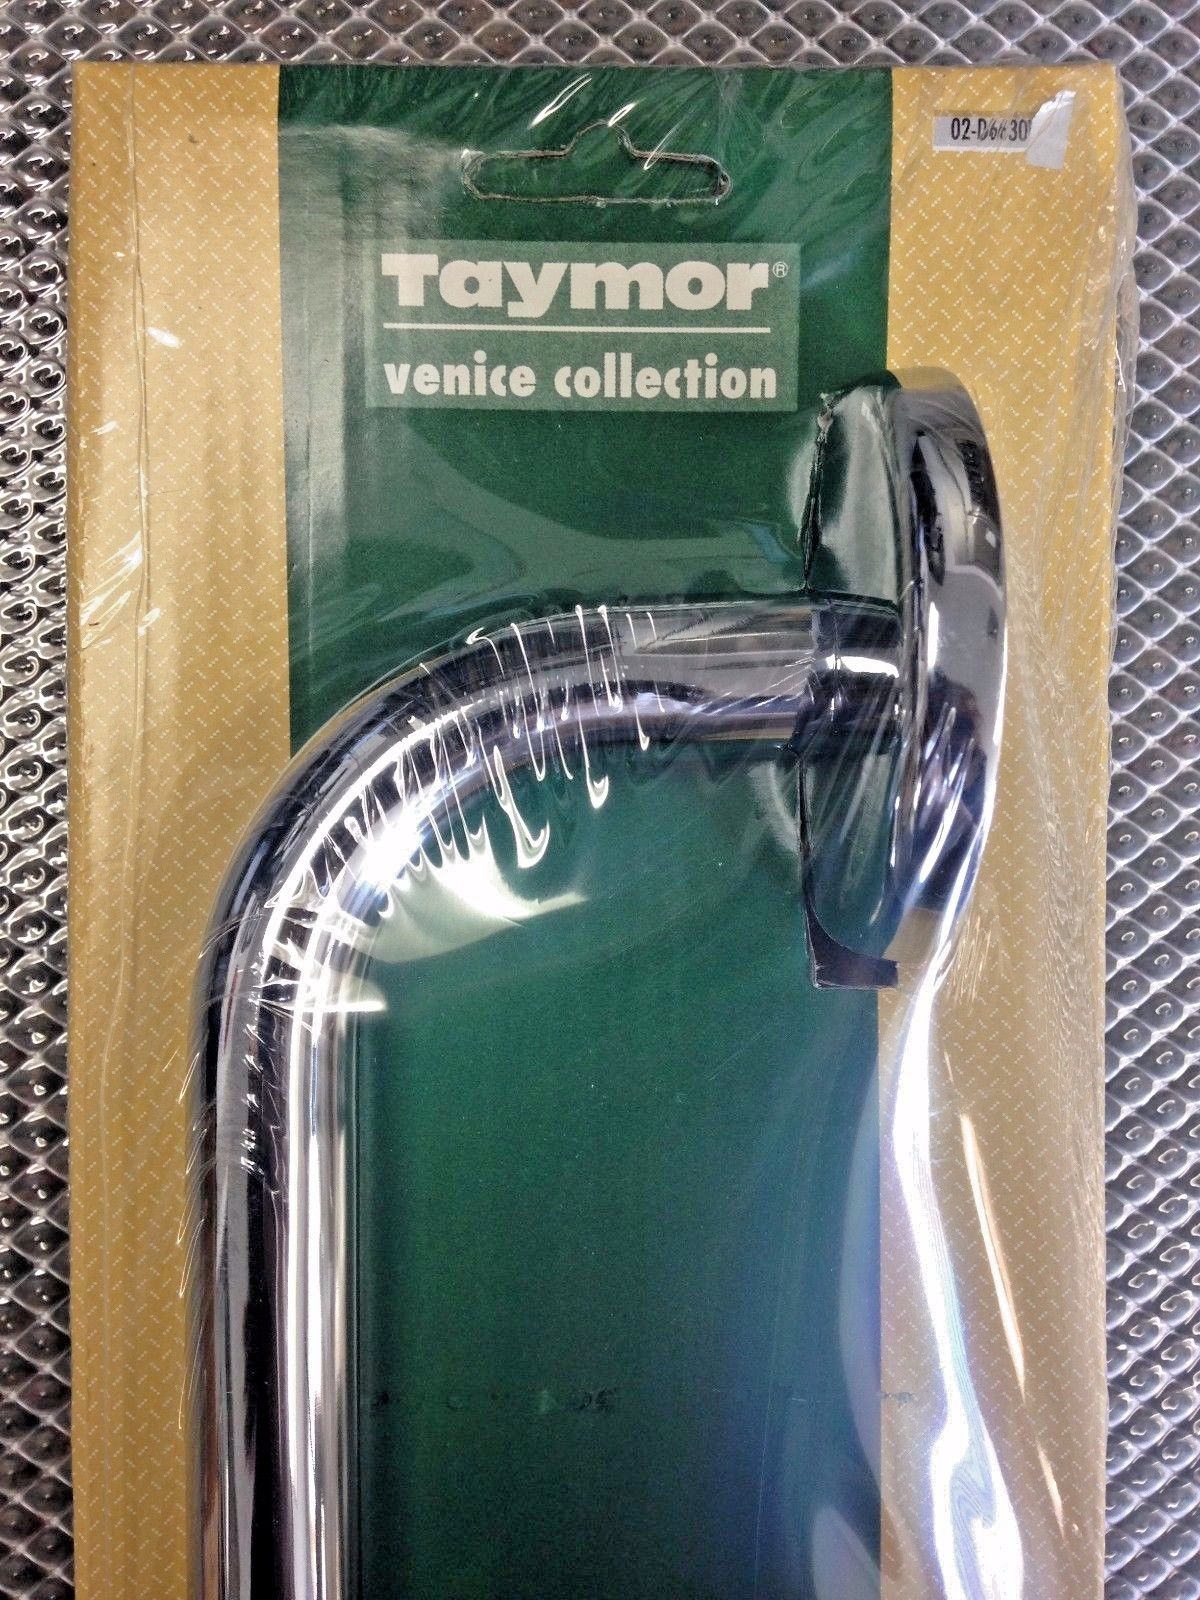 Taymor 02-D6630 Venice Series 30" x 5/8" Towel Bar (Chrome)